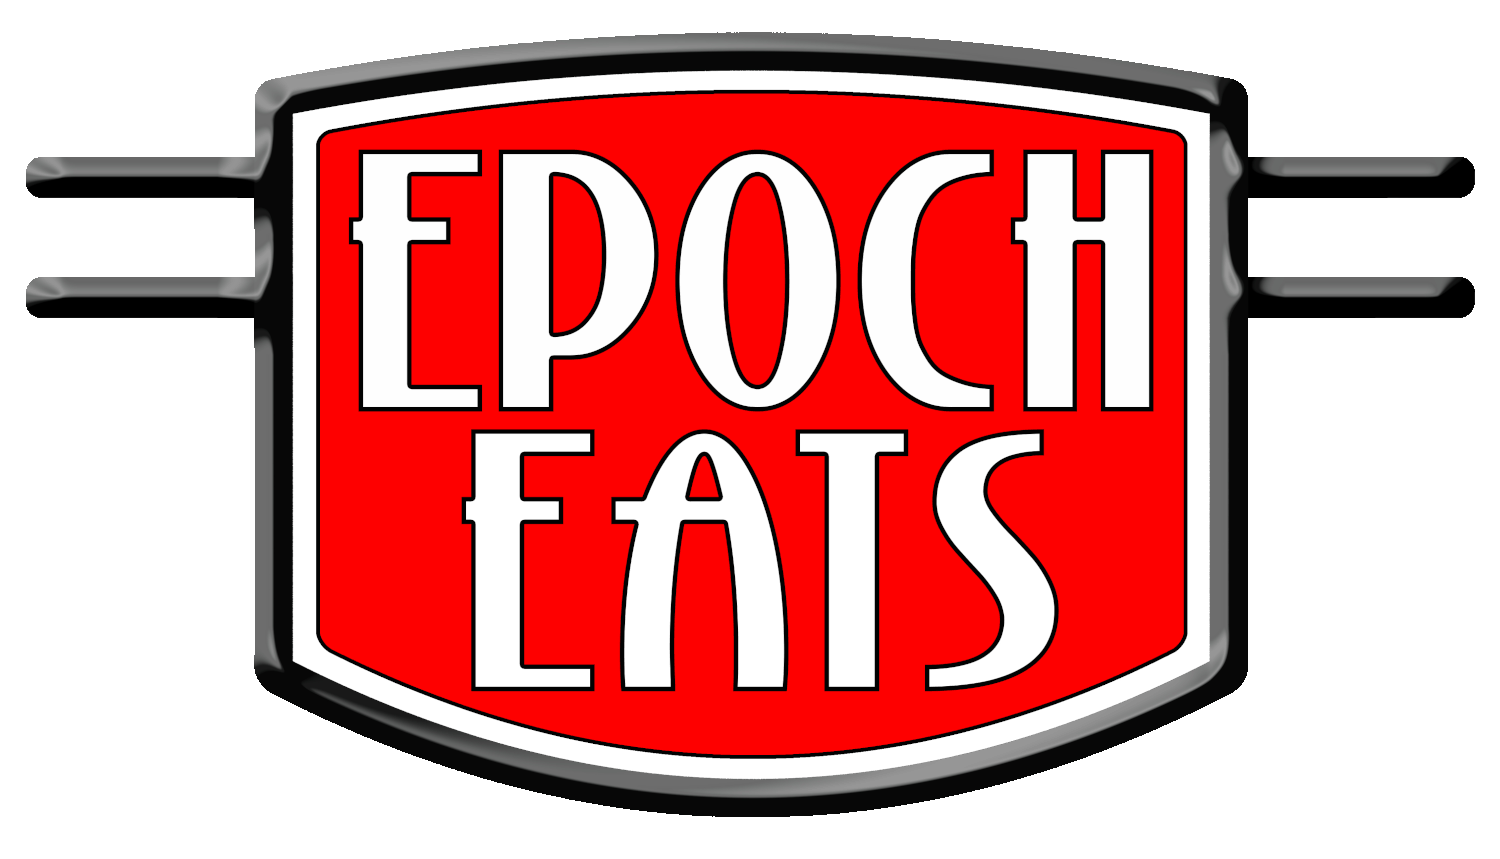 Epoch-Eats